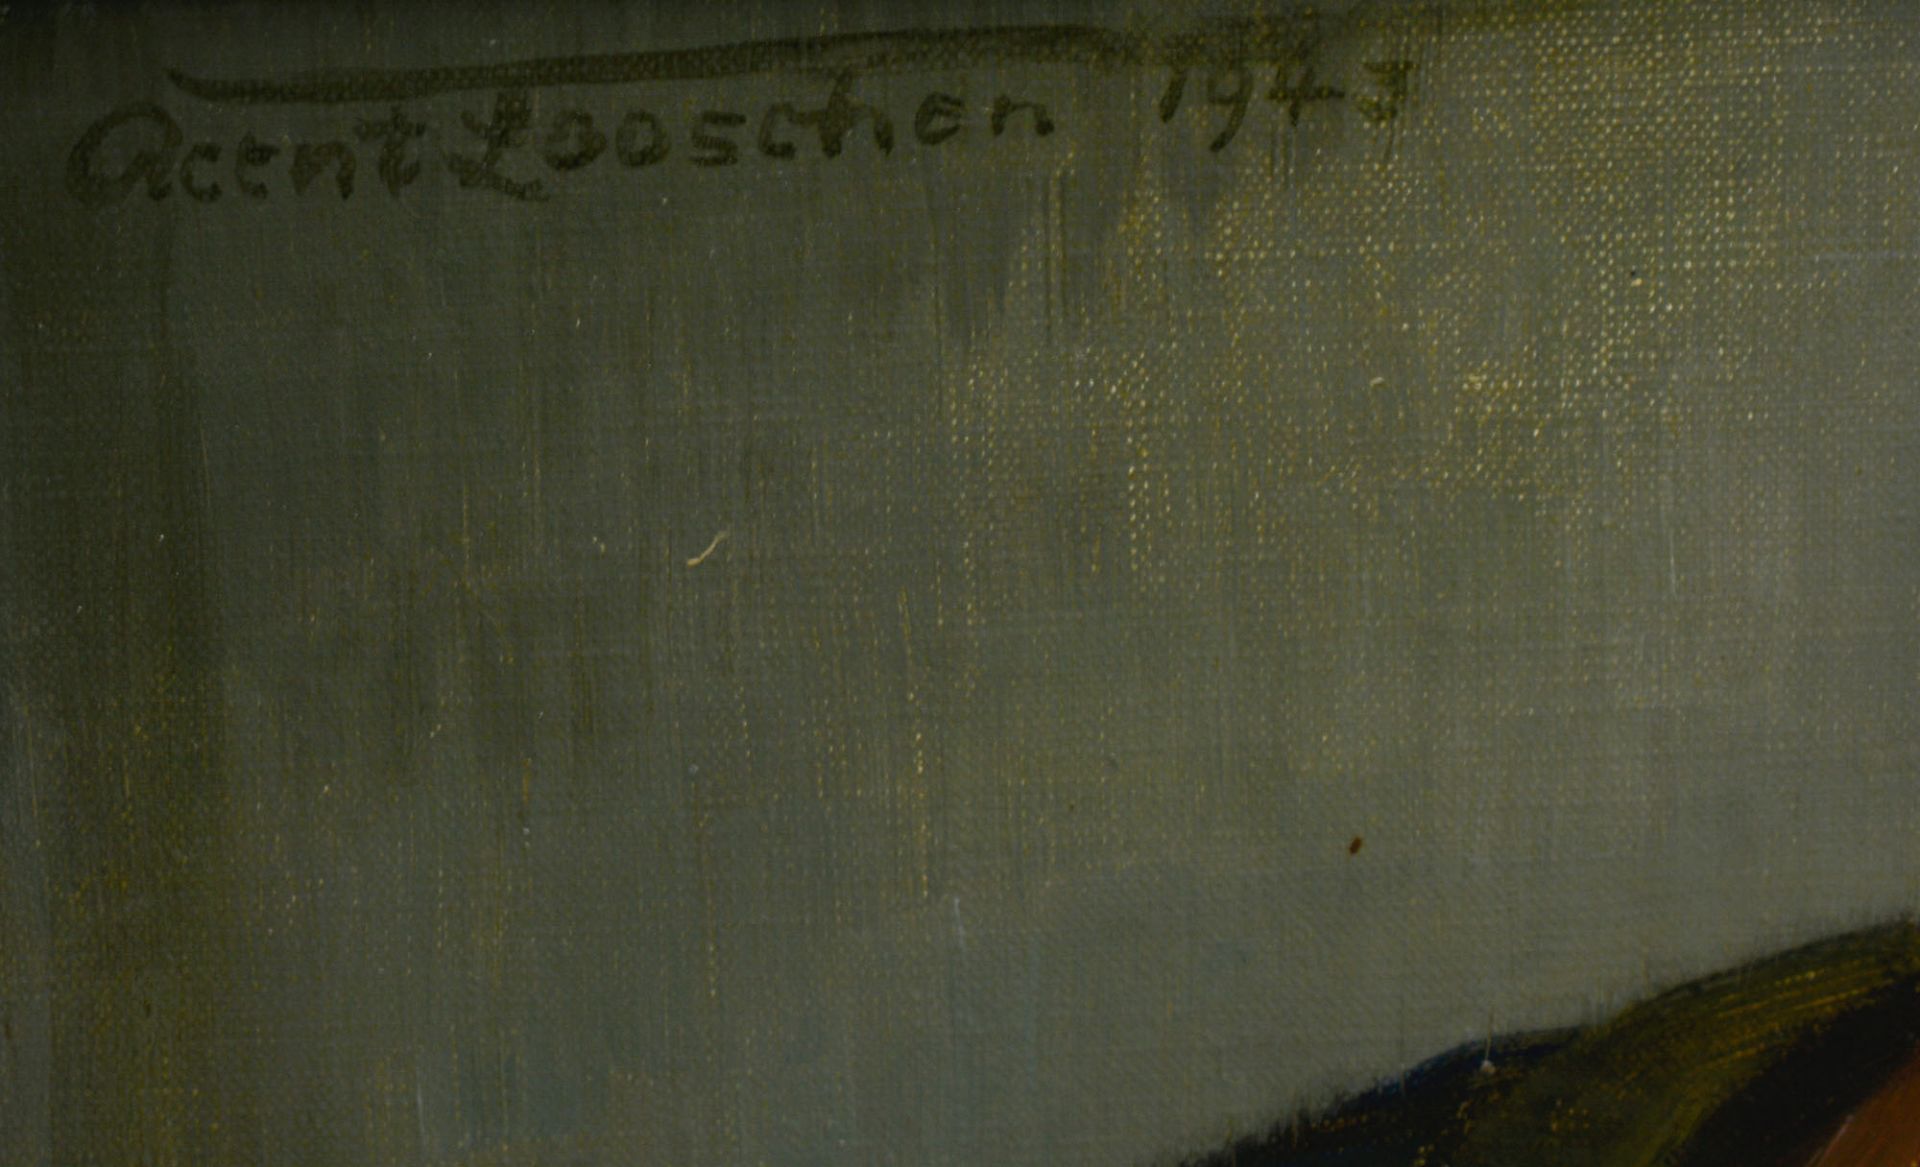 Reent Looschen (1893 Berlin - 1945 ebenda)Betender, Öl auf Leinwand, 51 cm x 41 cm, oben links - Bild 2 aus 5